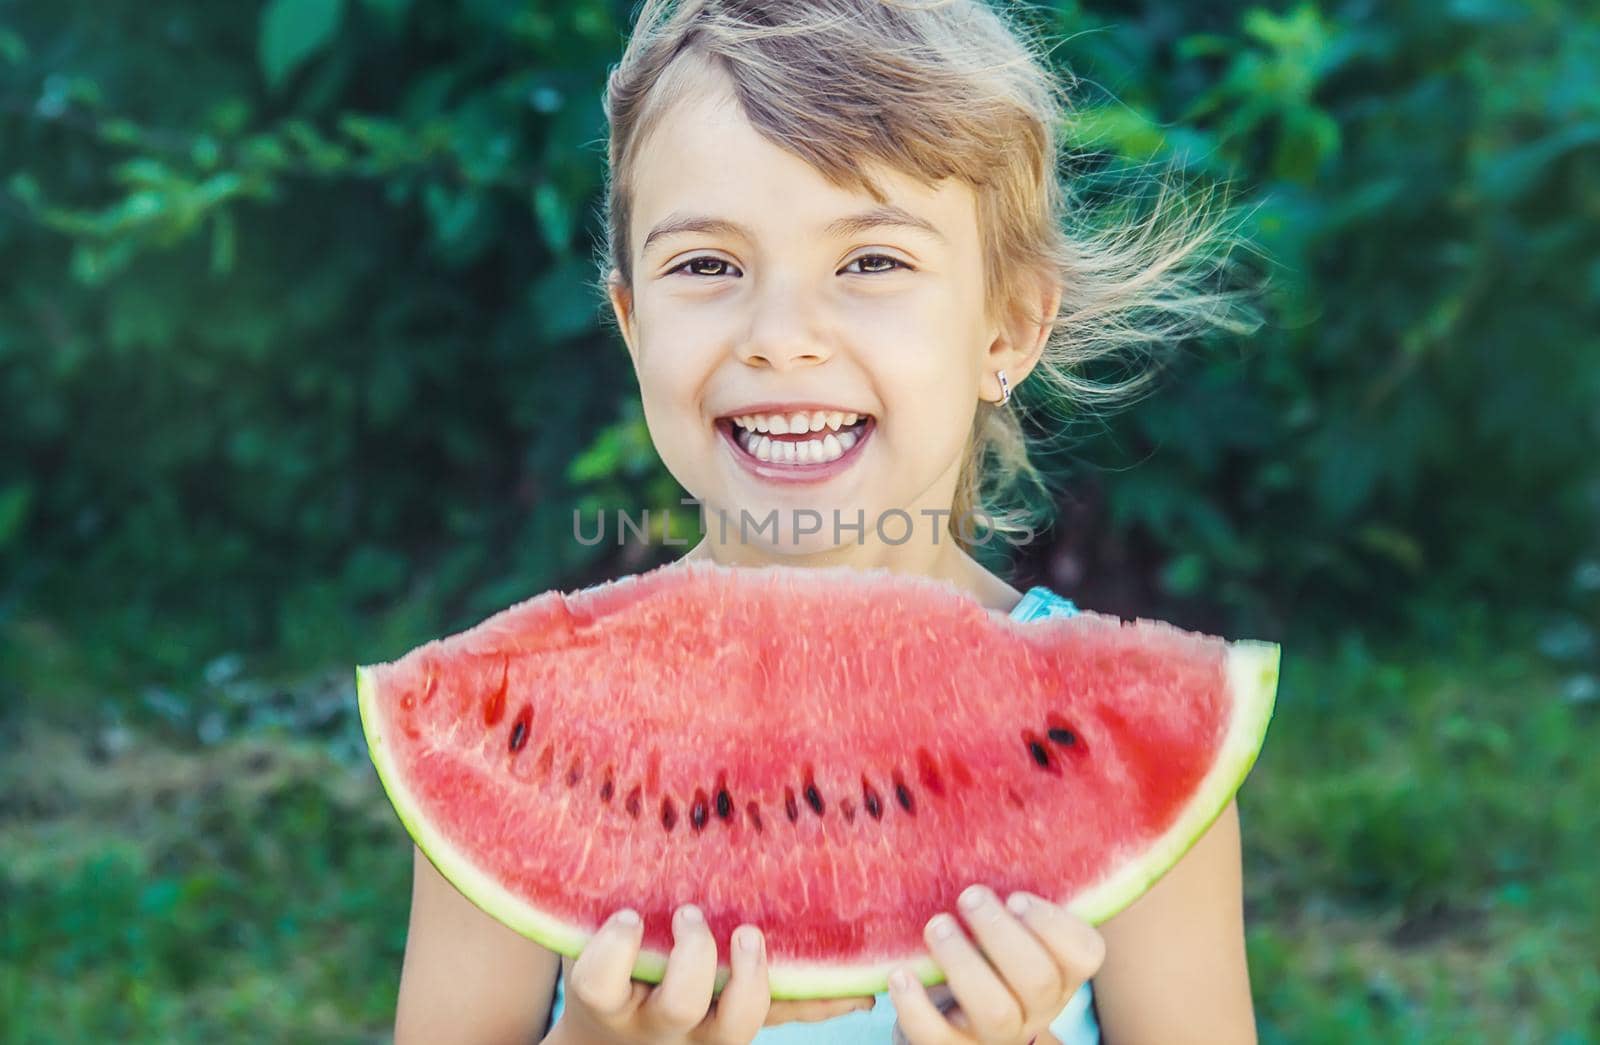 A child eats watermelon. Selective focus. nature.